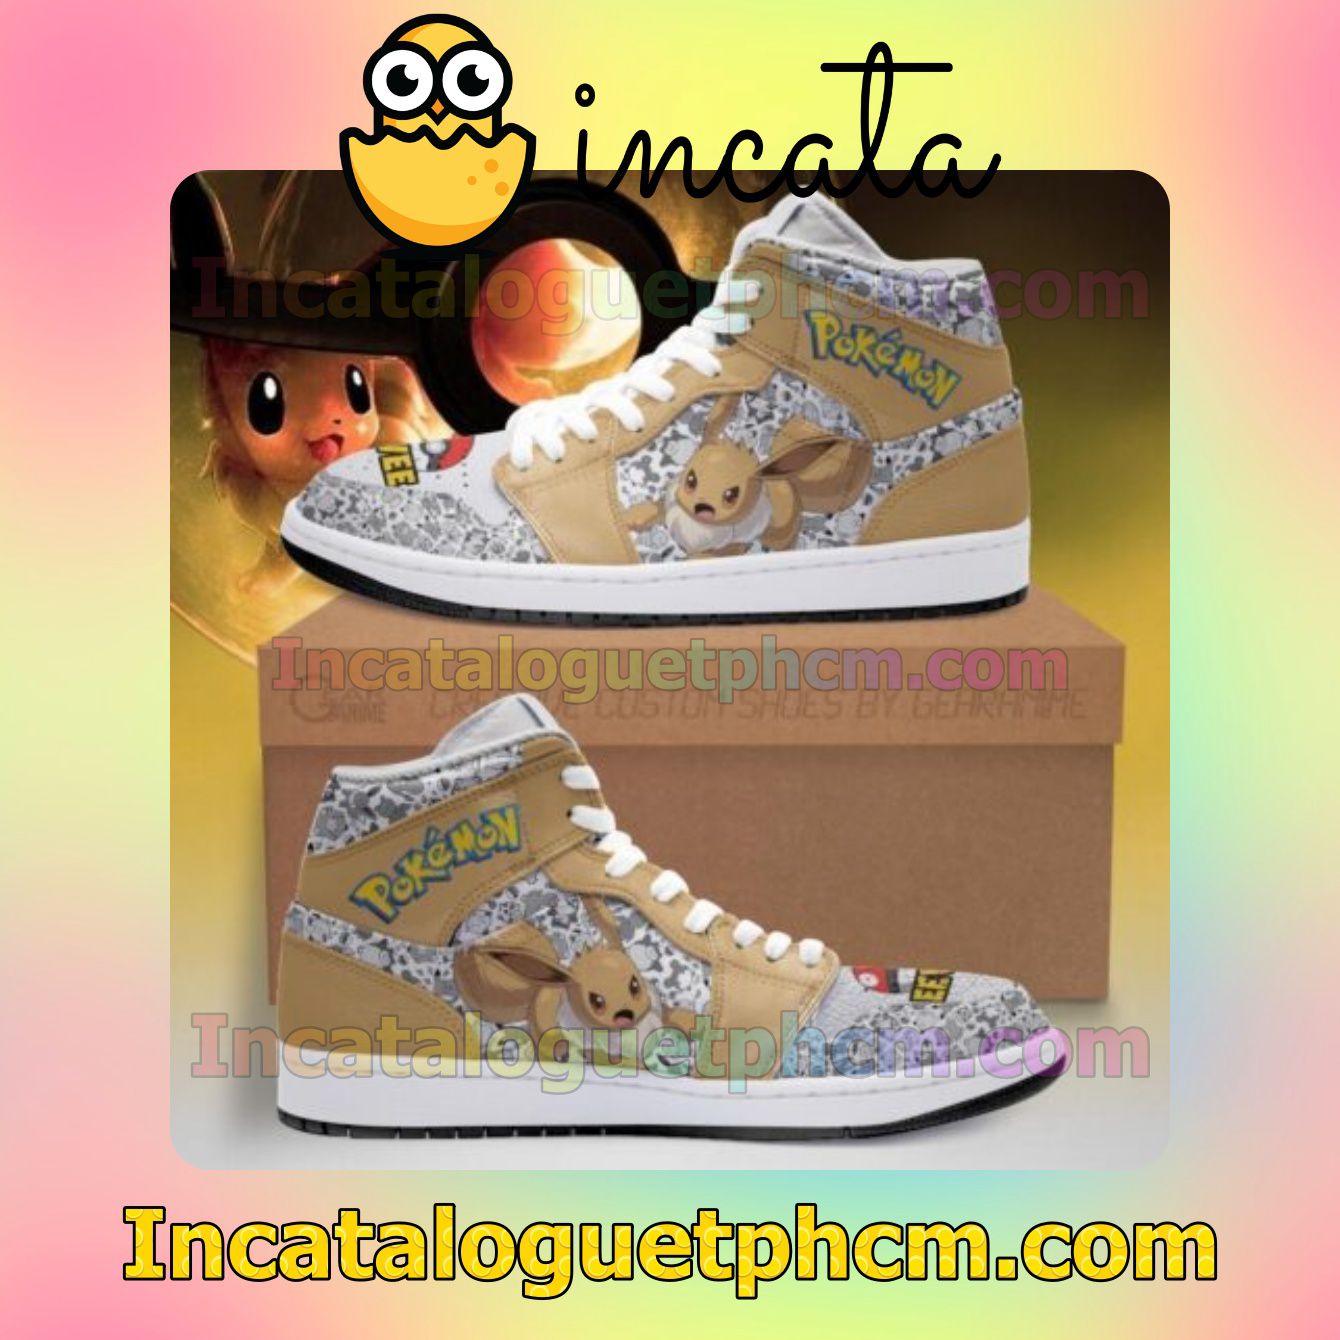 Eevee Pokemon Air Jordan 1 Inspired Shoes